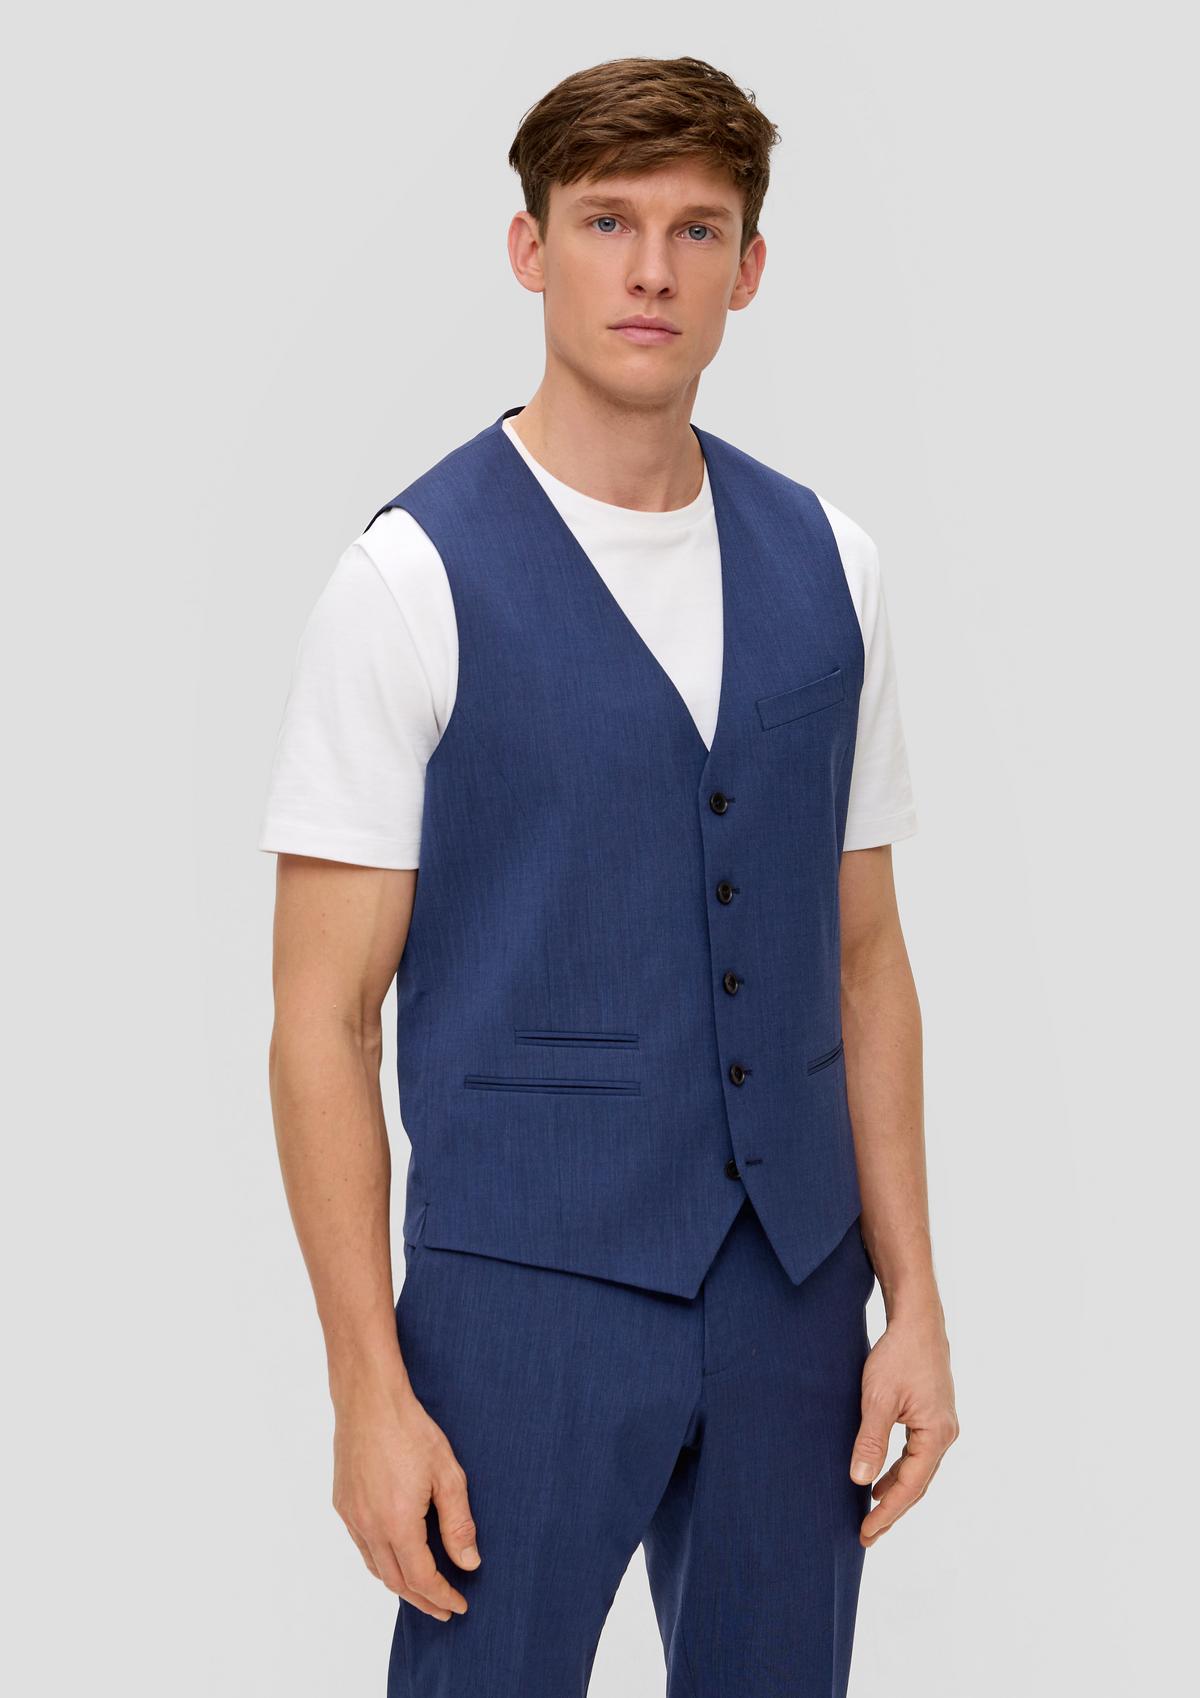 Viscose blend suit waistcoat